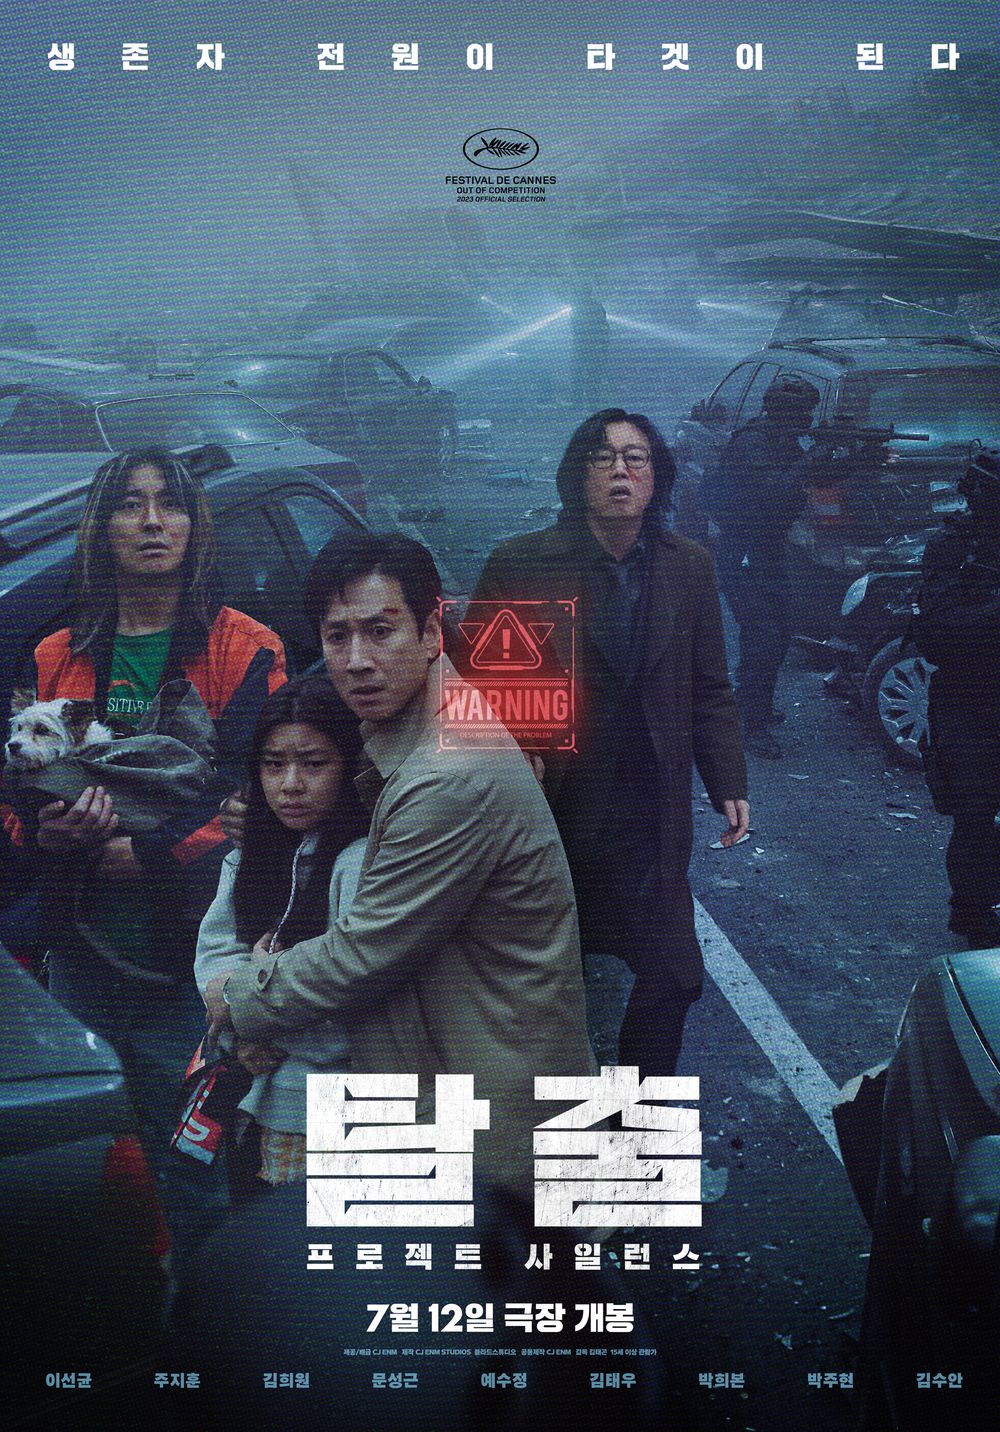 [미국살이]  AMC 극장에서 한국영화 ‘탈출’ 상영 – 7월 12일부터 (Project Silence)